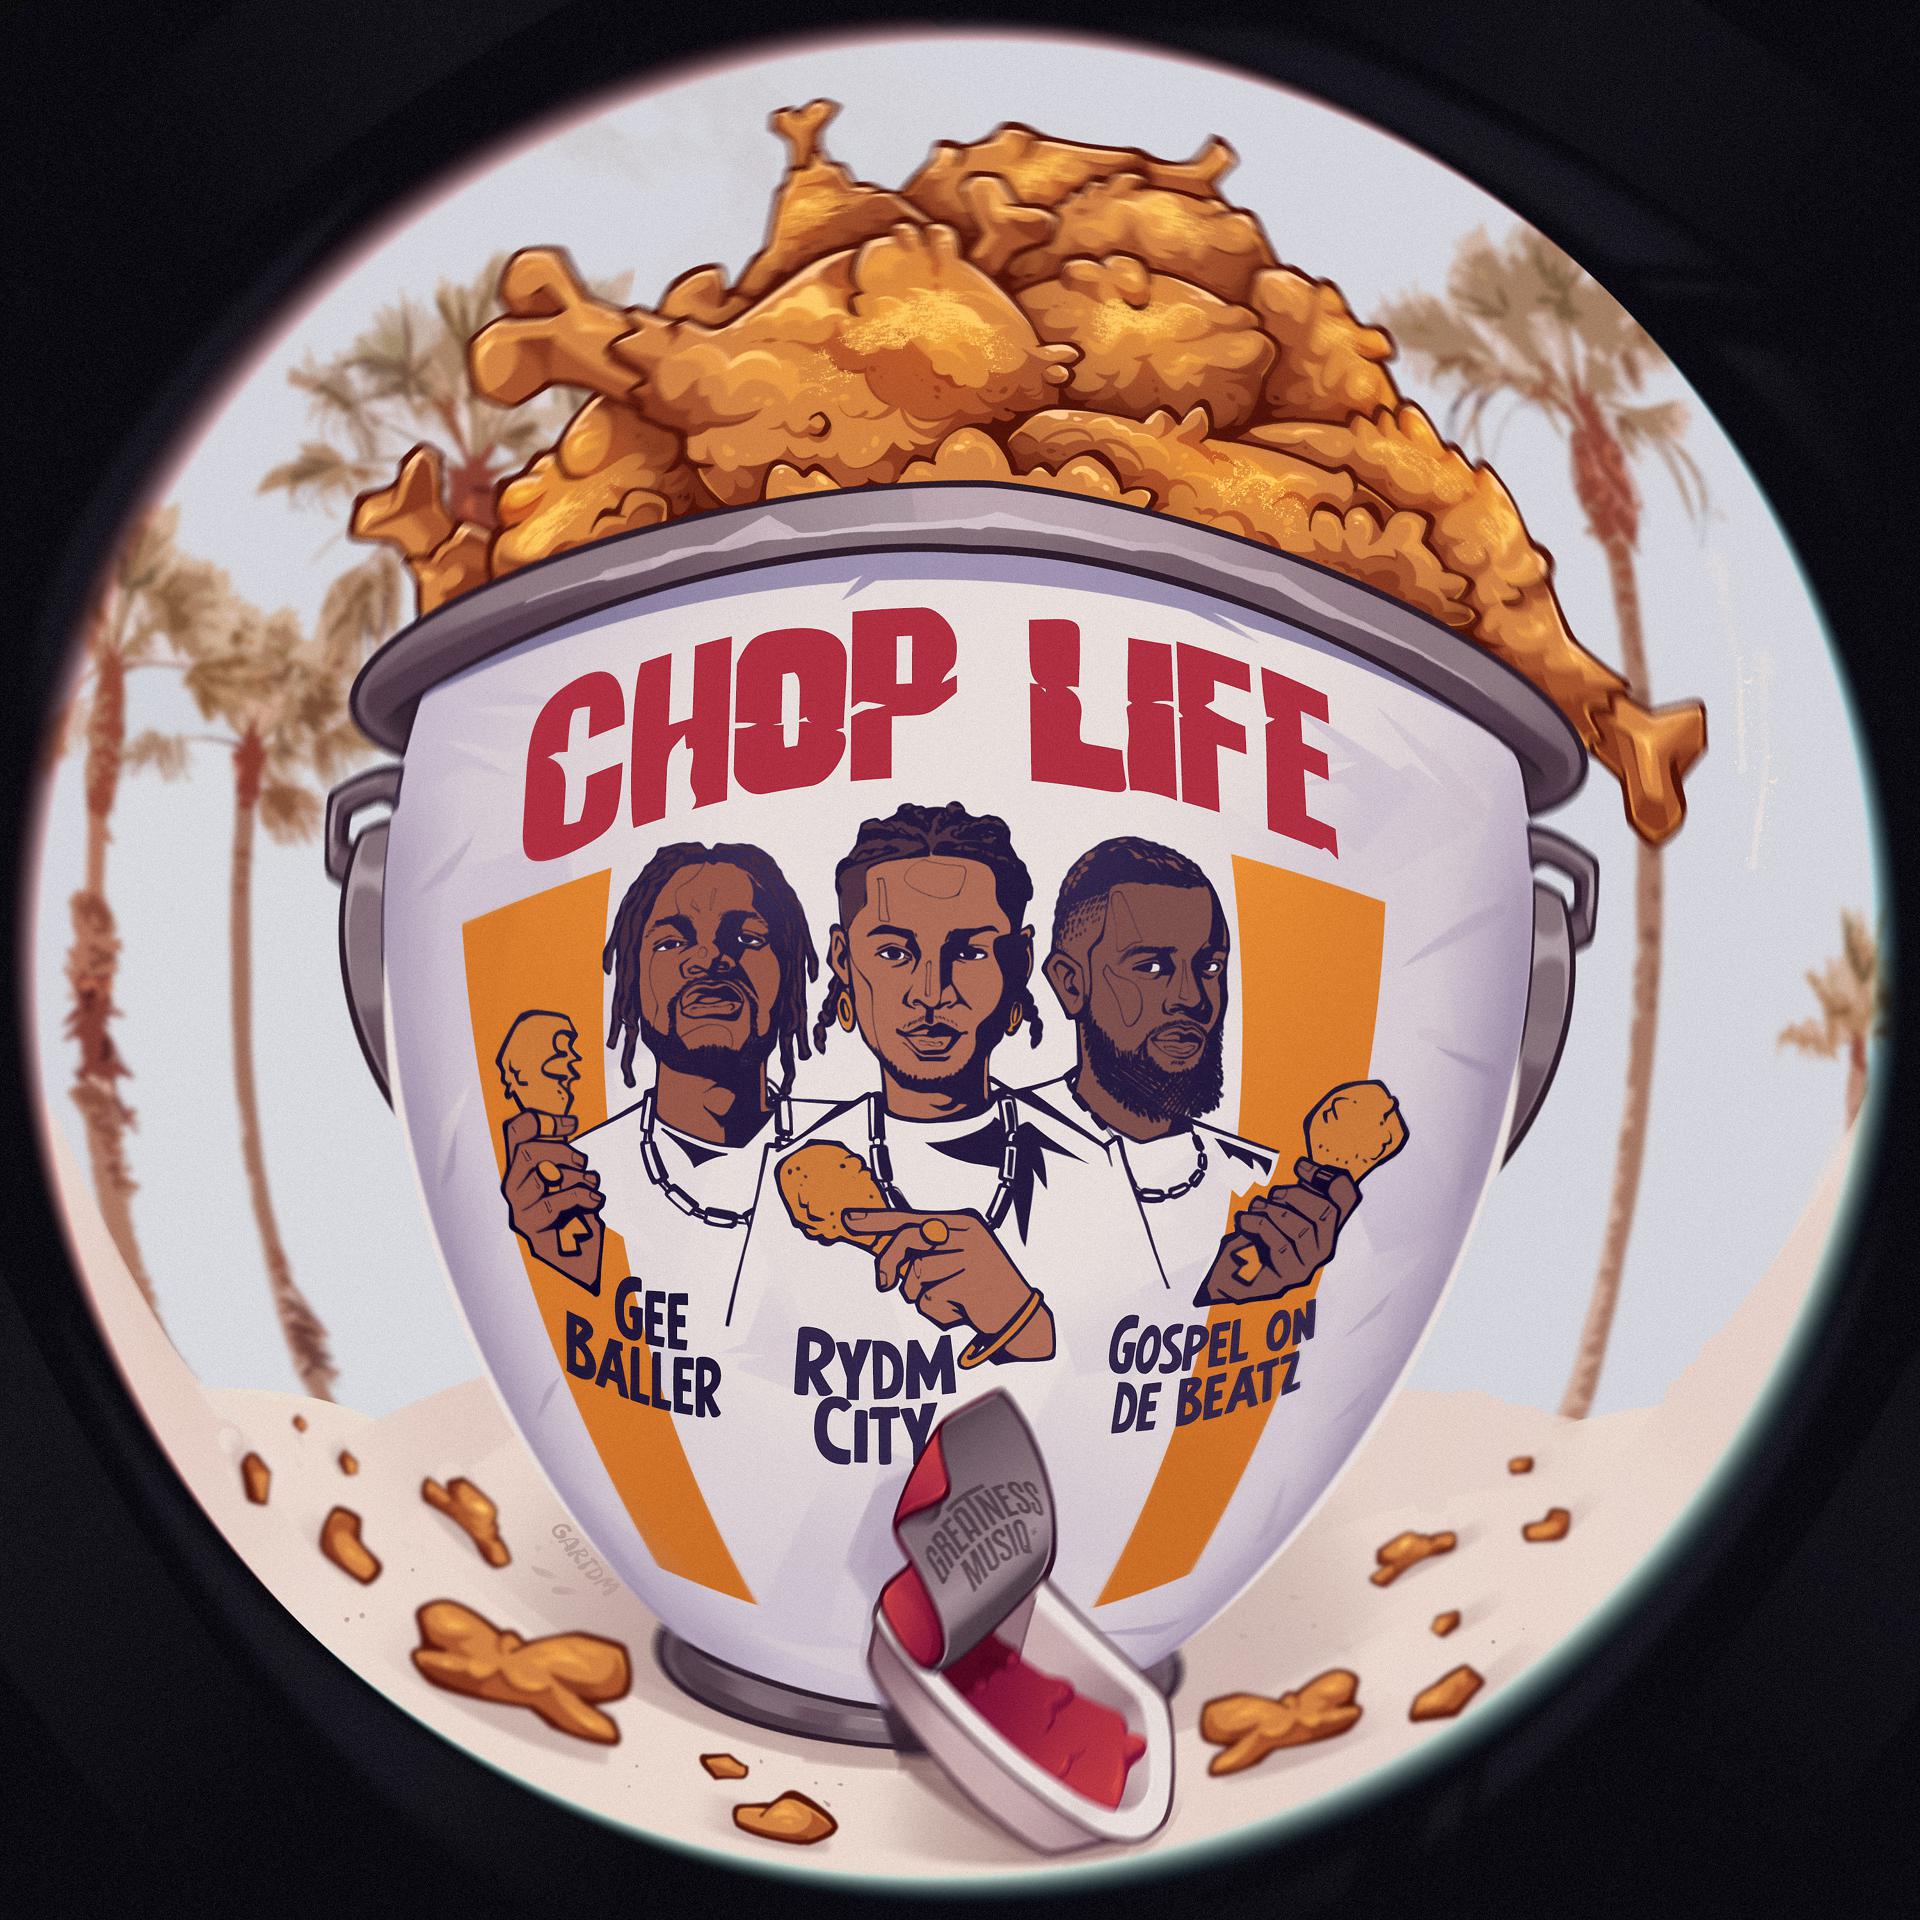 Постер к треку Rydm City, Gee Baller, Gospel On De Beatz - Chop Life